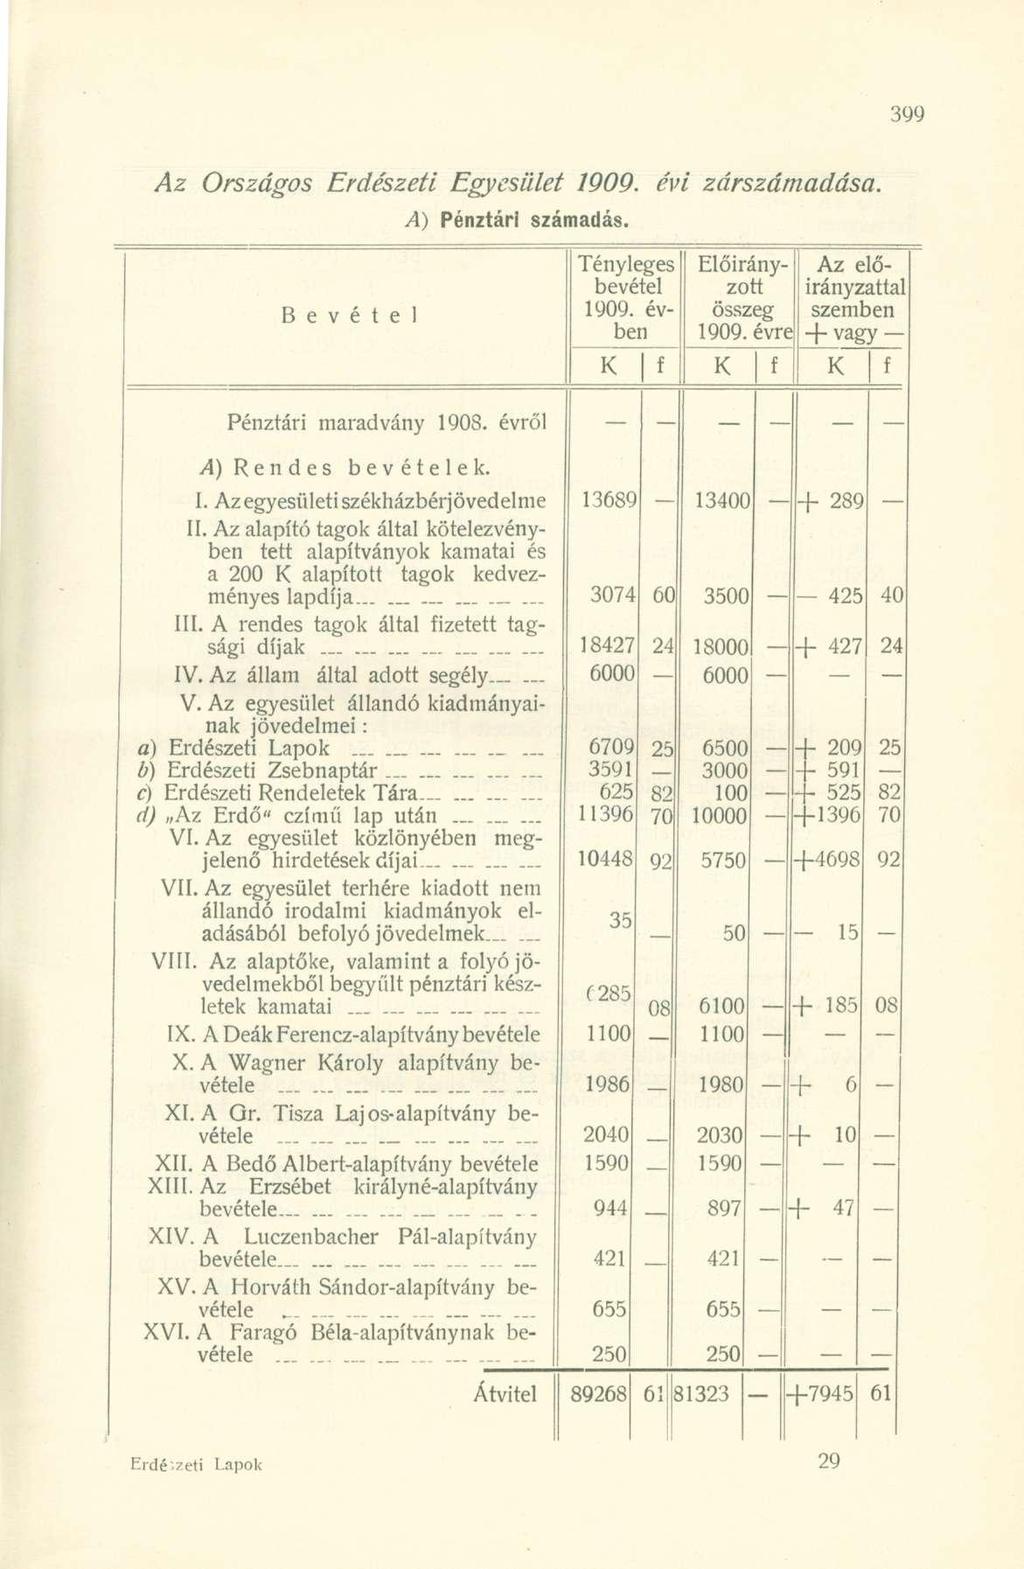 Az Országos Erdészeti Egyesület 1909. évi zárszámadása. A) Pénztári számadás. Bevétel Tényleges bevétel 1909. évben Előirányzott összeg 1909.